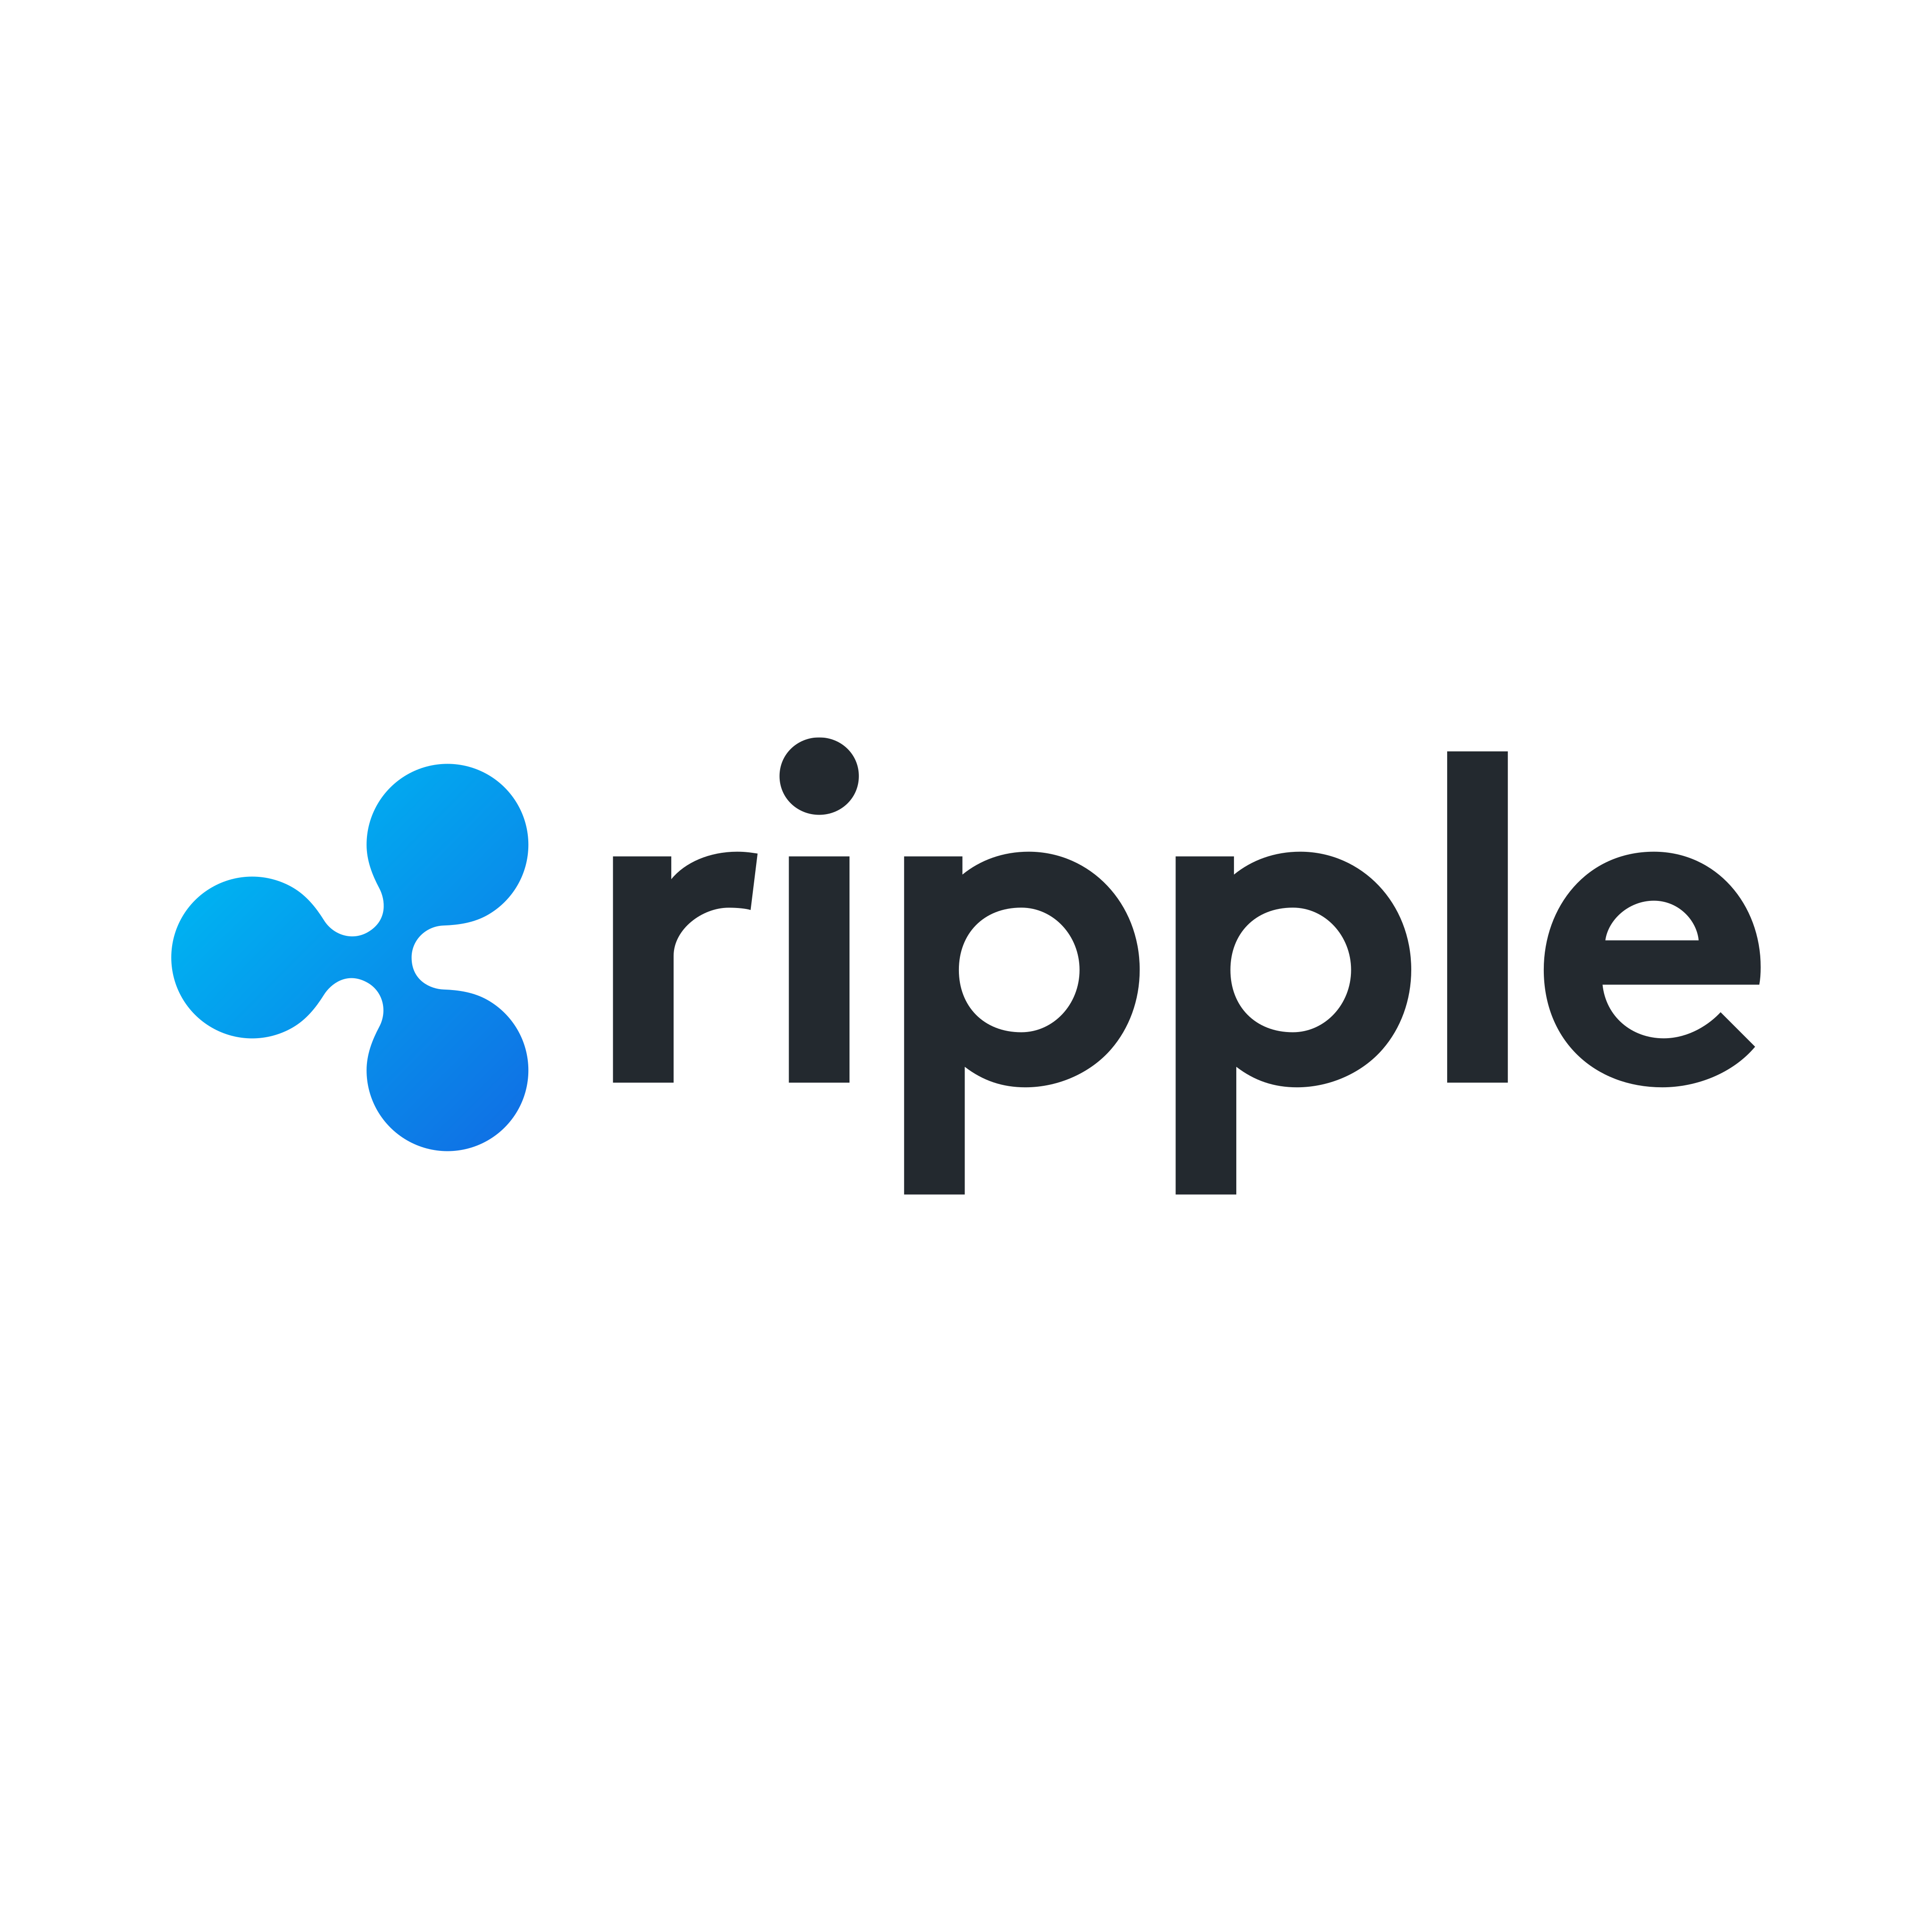 ripple logo 0 - Ripple Logo